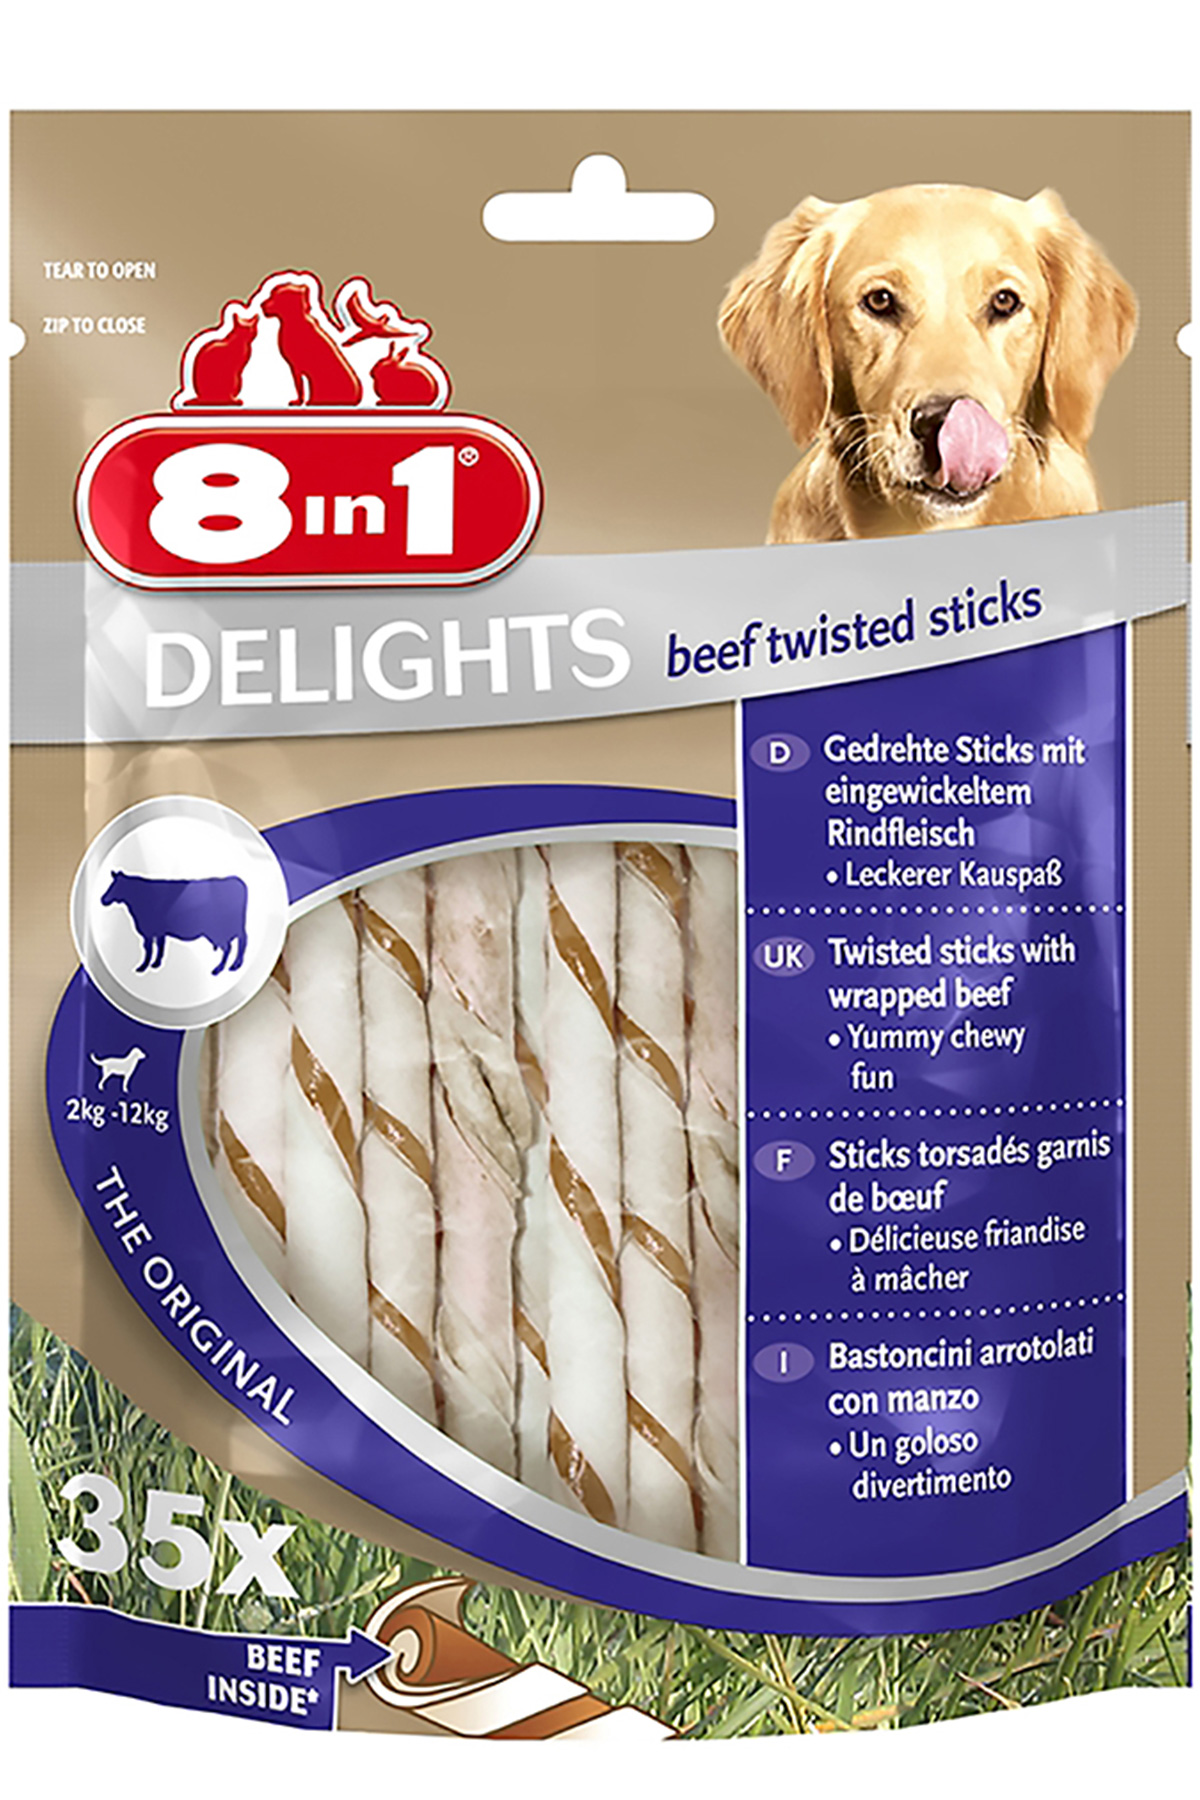 8in1 Delights Köpekler için Biftekli Ödül Çubuğu 35 Adet